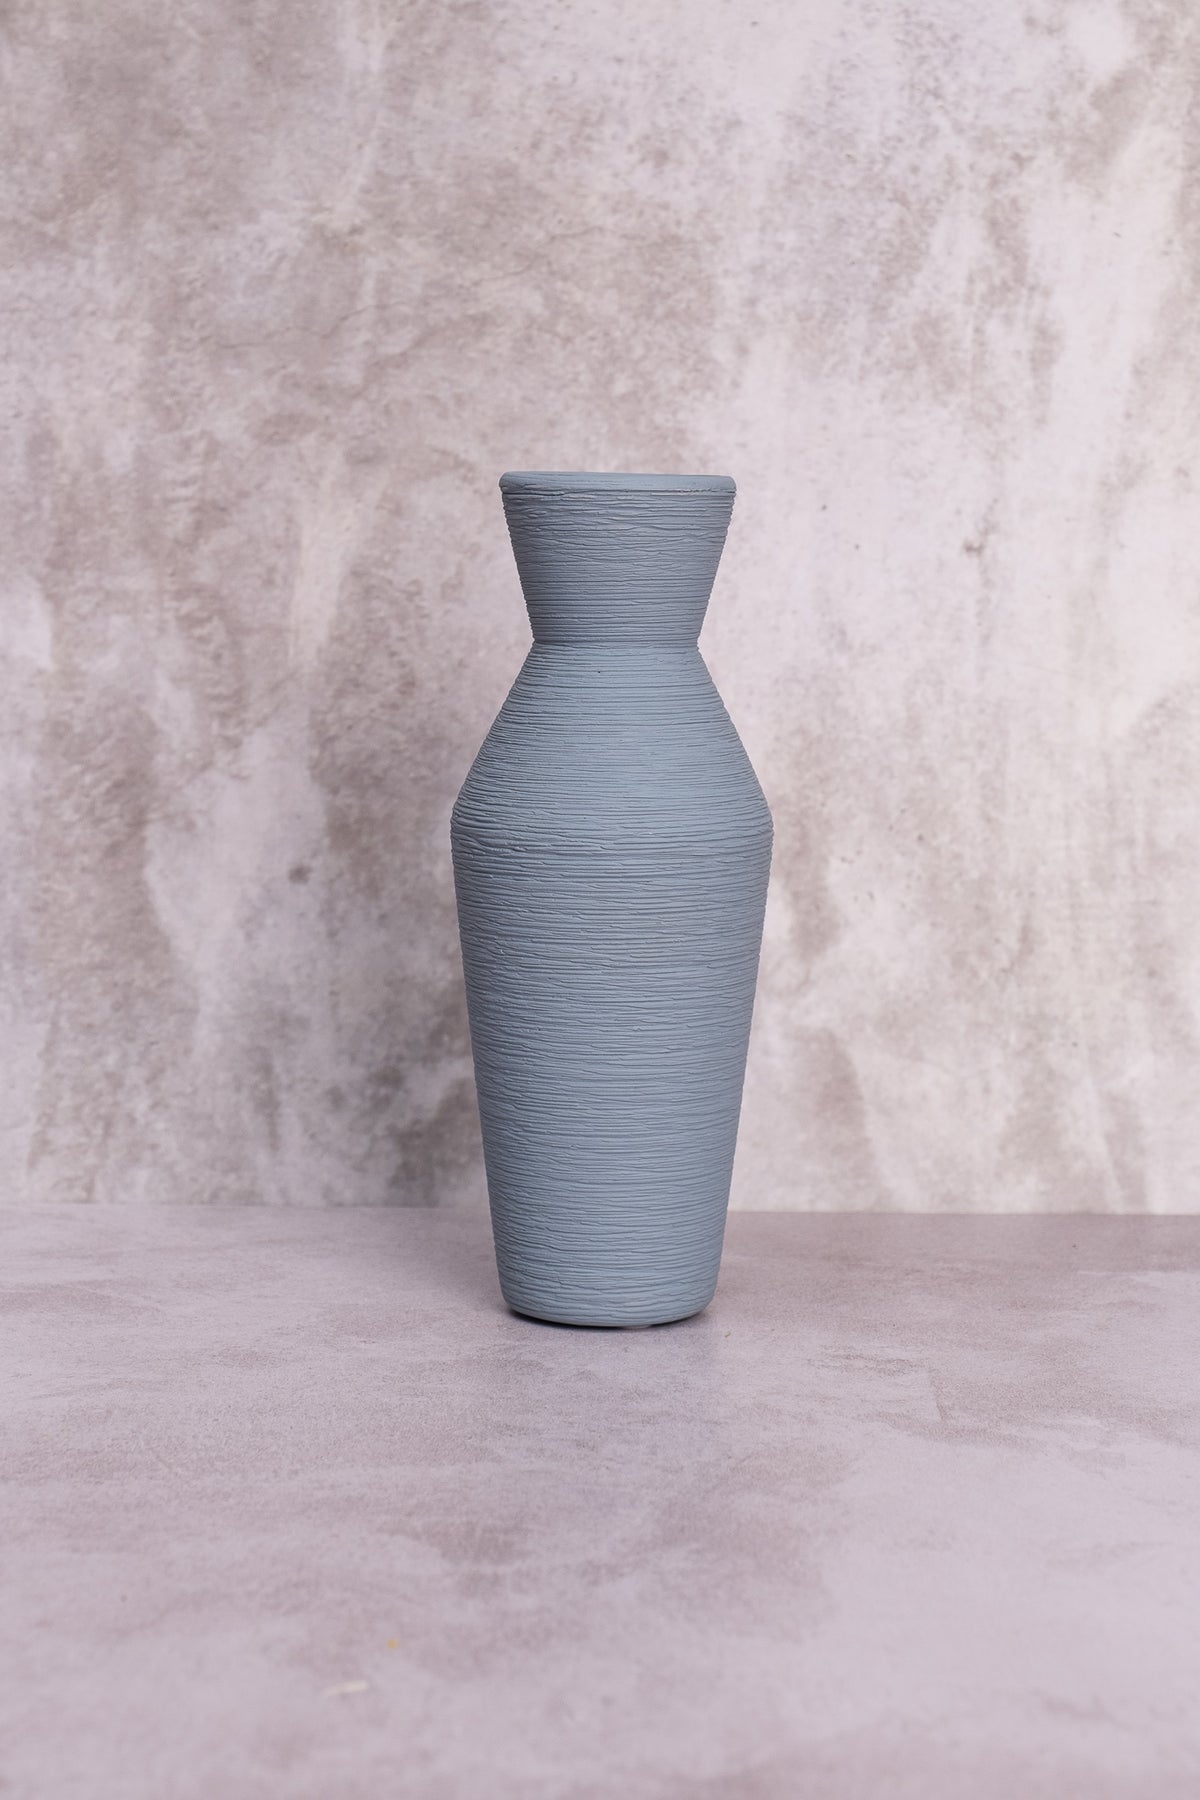 Slate Blue Ceramic Vase (20cm)